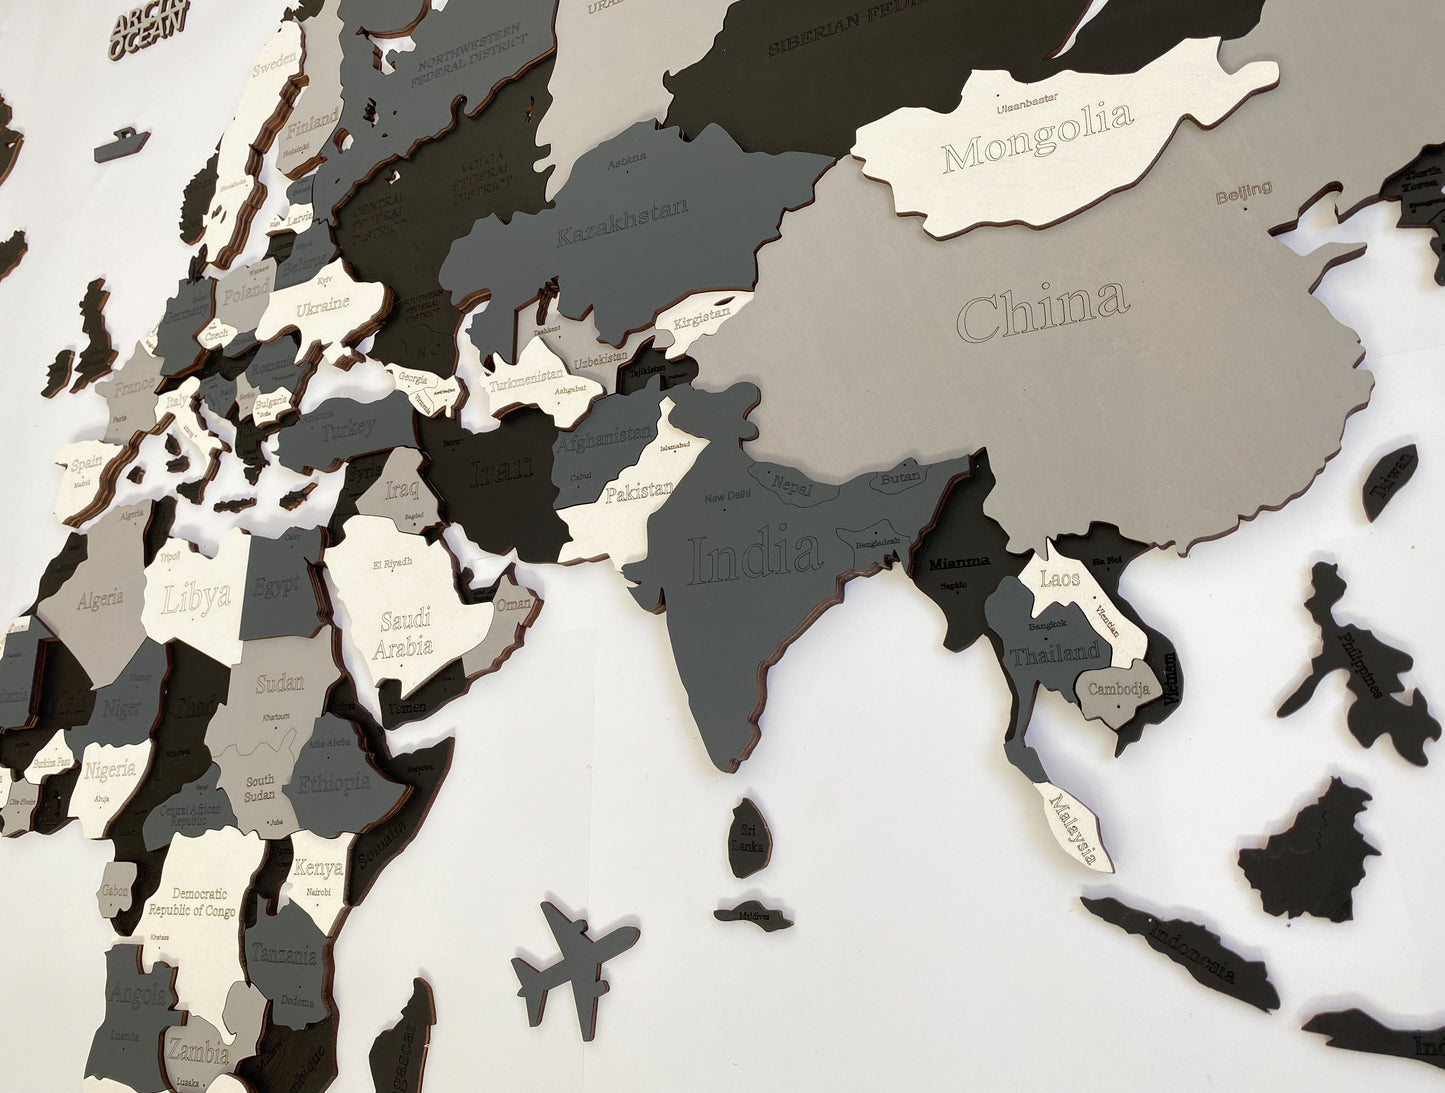 3D WOODEN WORLD  MAP "NIGHT"